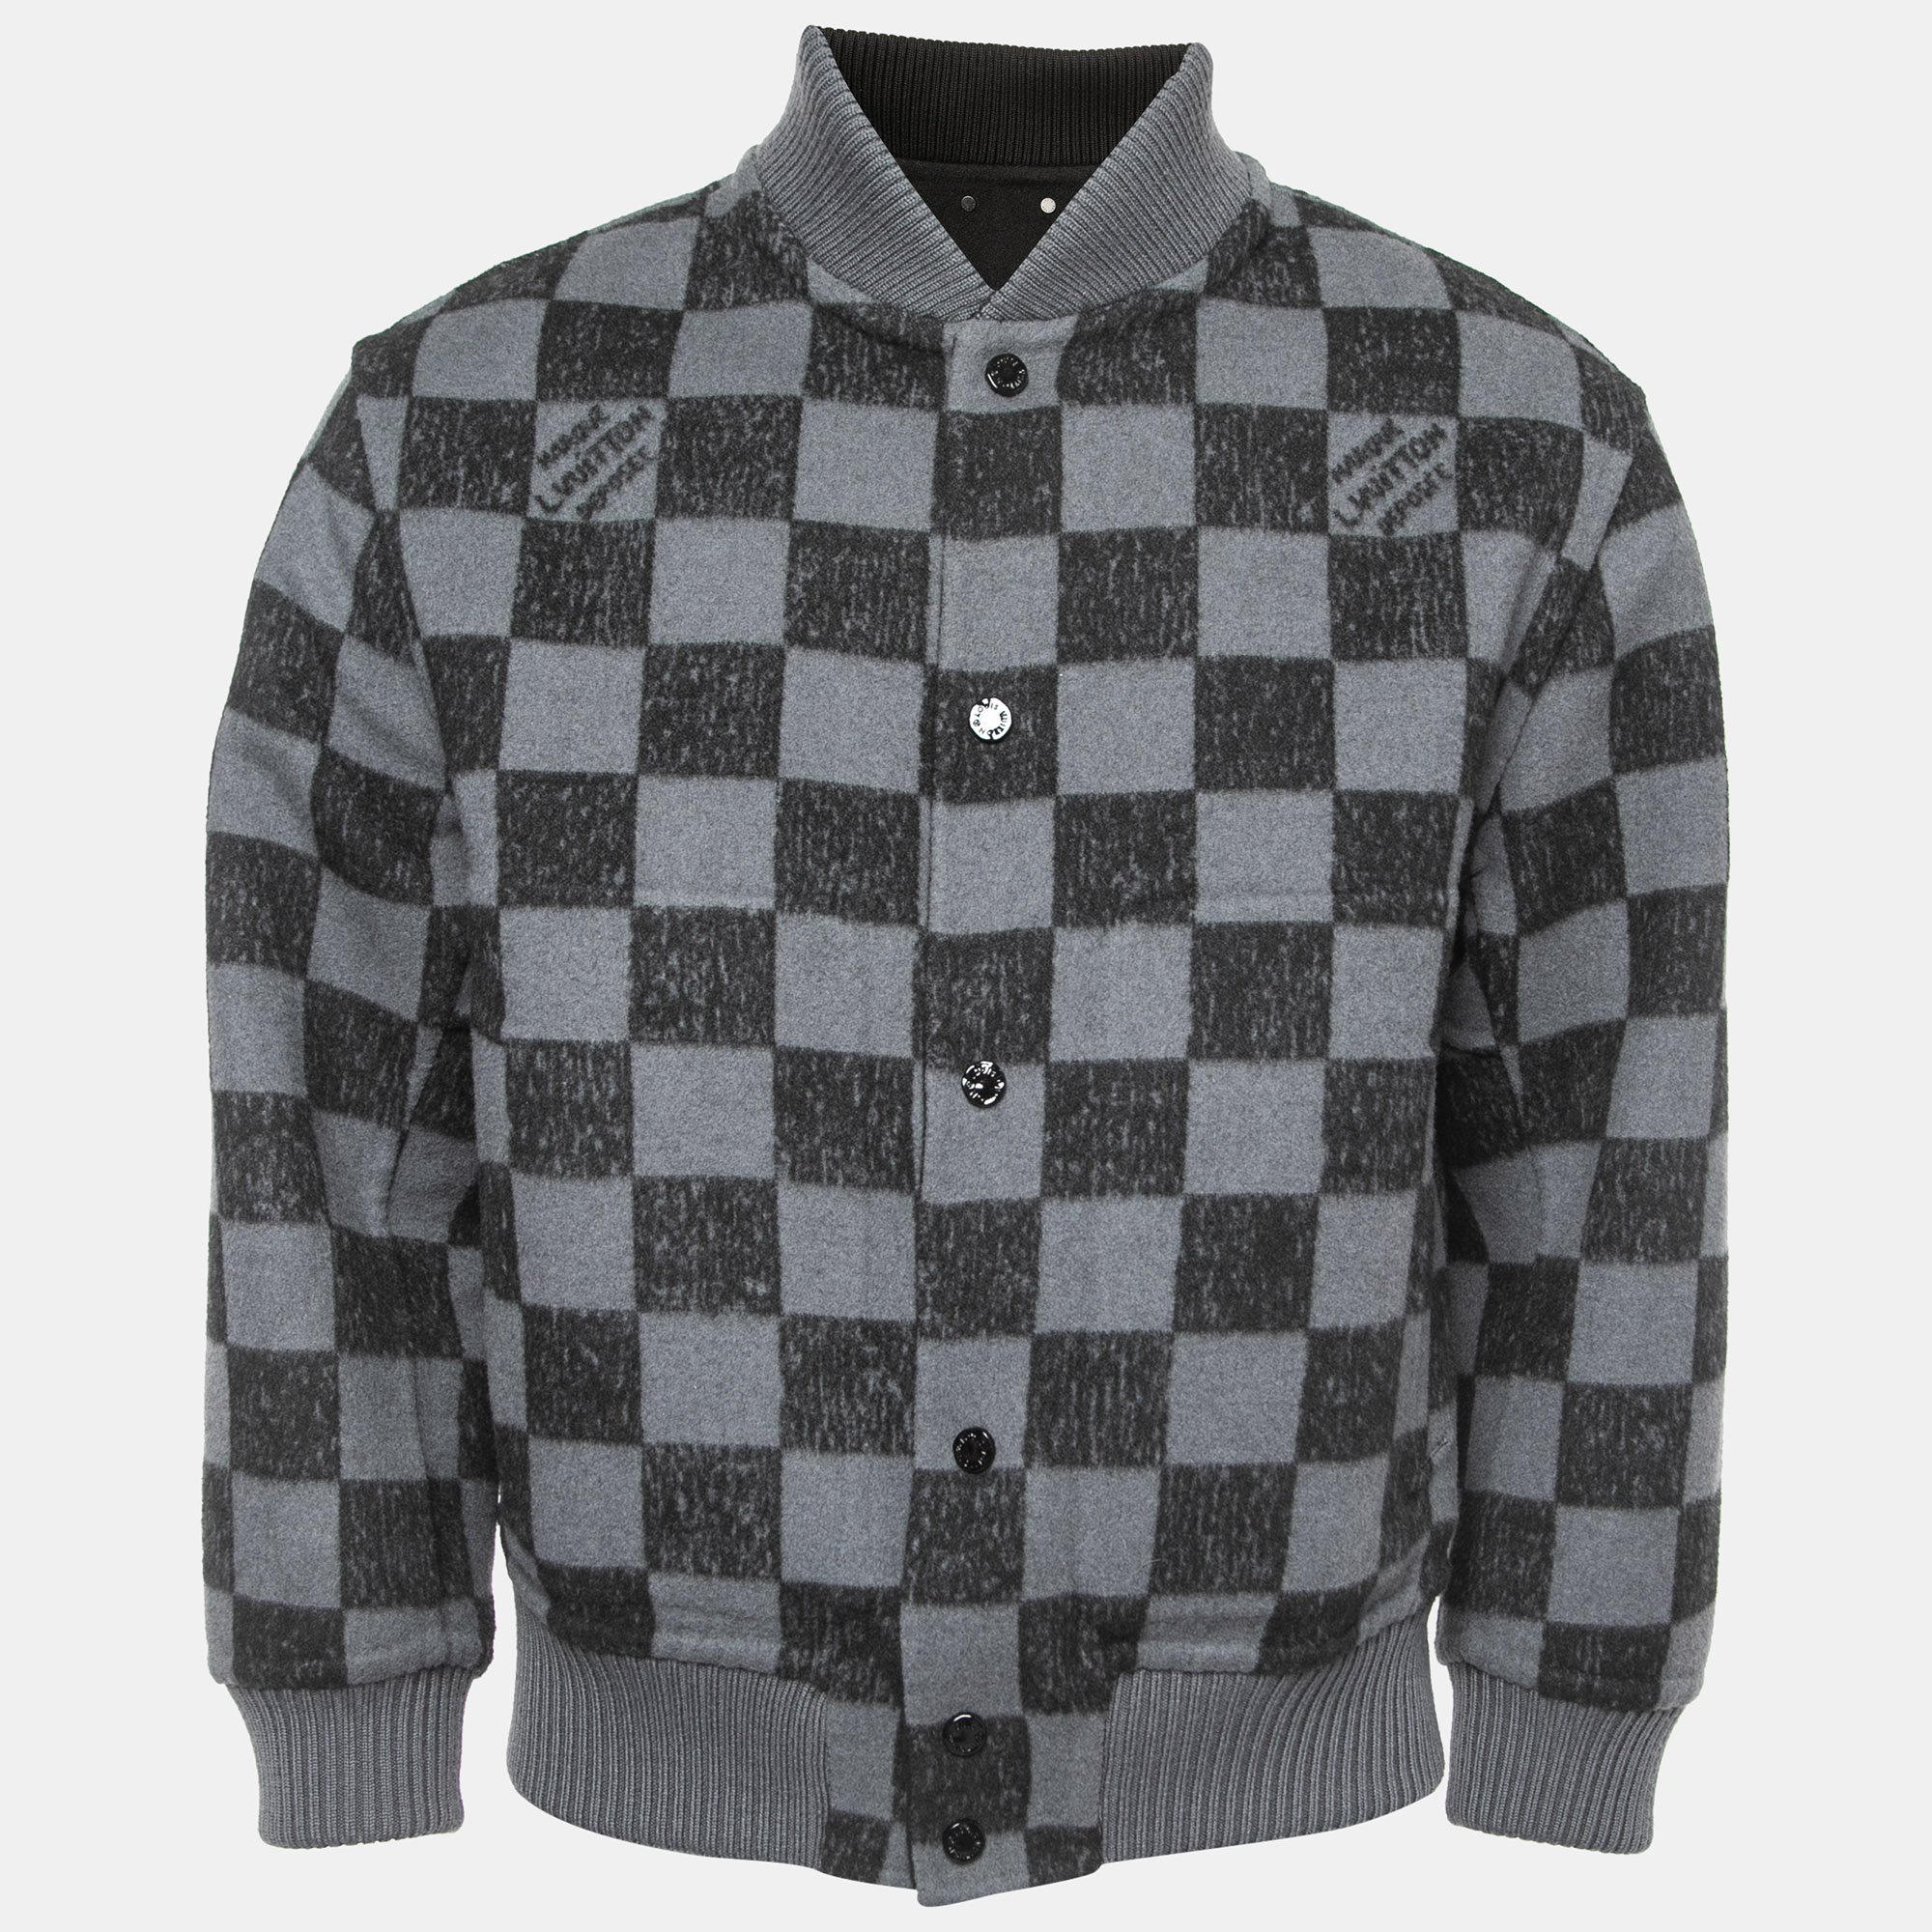 Louis Vuitton, Jackets & Coats, Euc Mens Size Medium Louis Vuitton Damier  Logo Print Paris Hooded Jacket